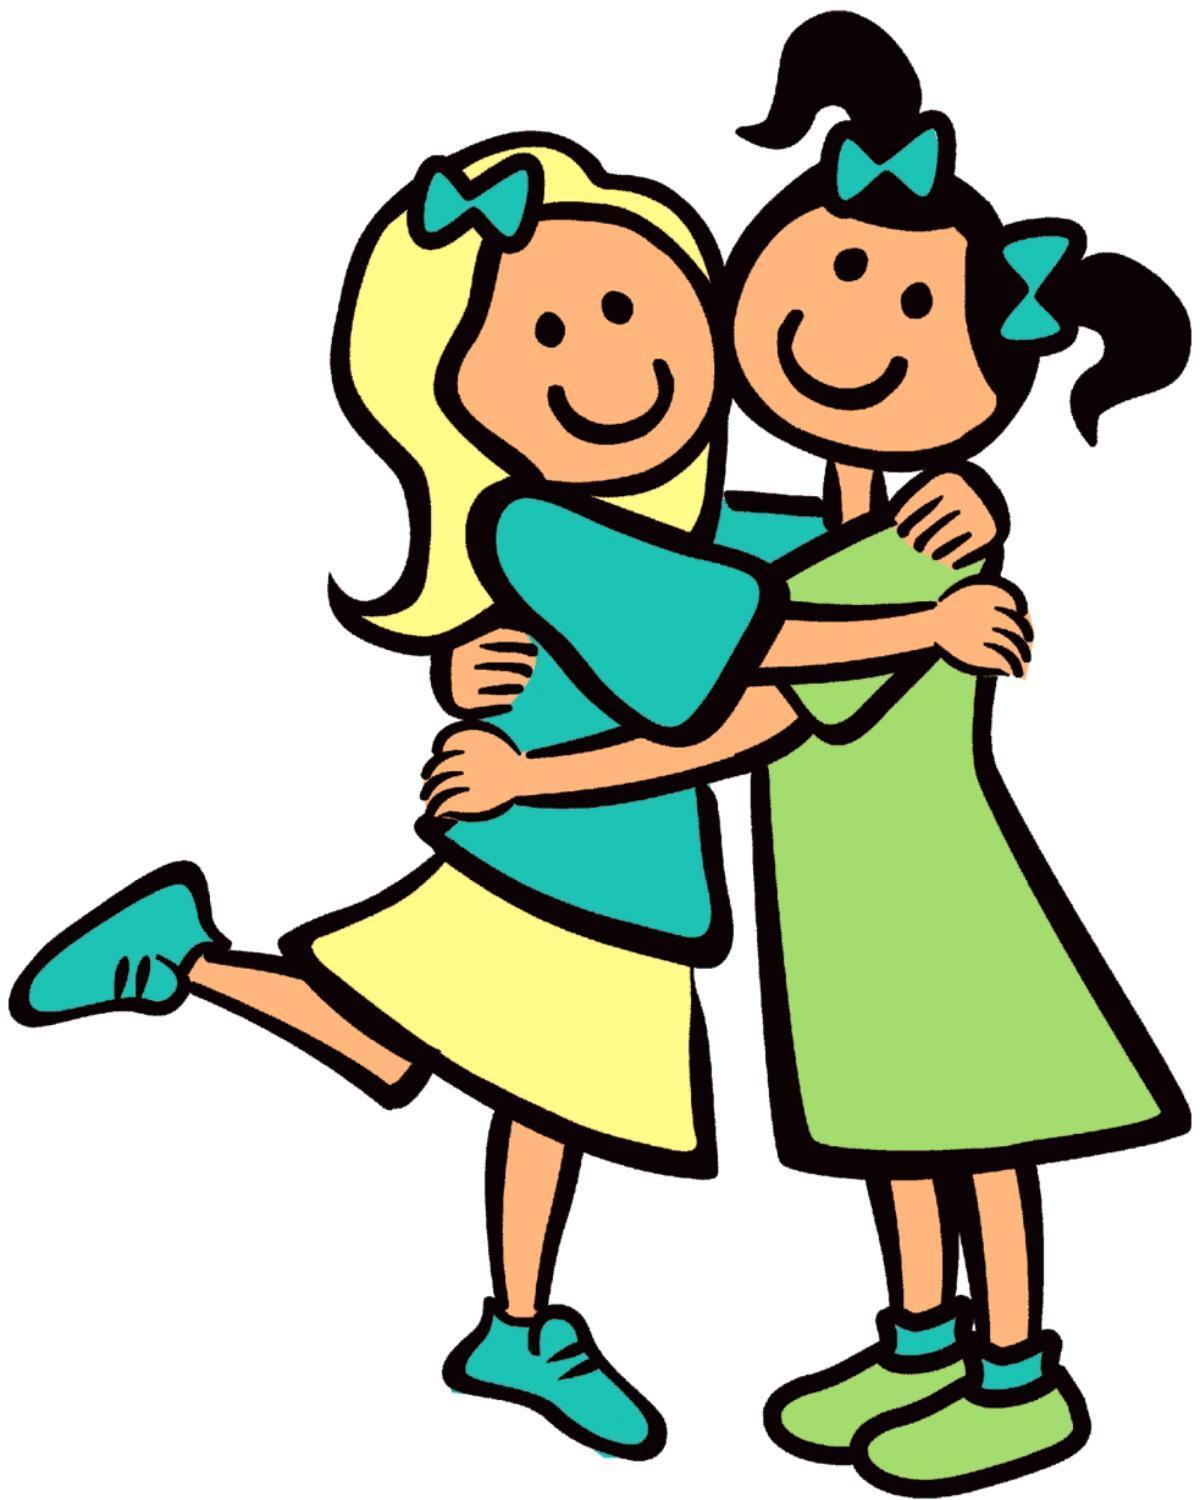 Cartoon girls hugging each other